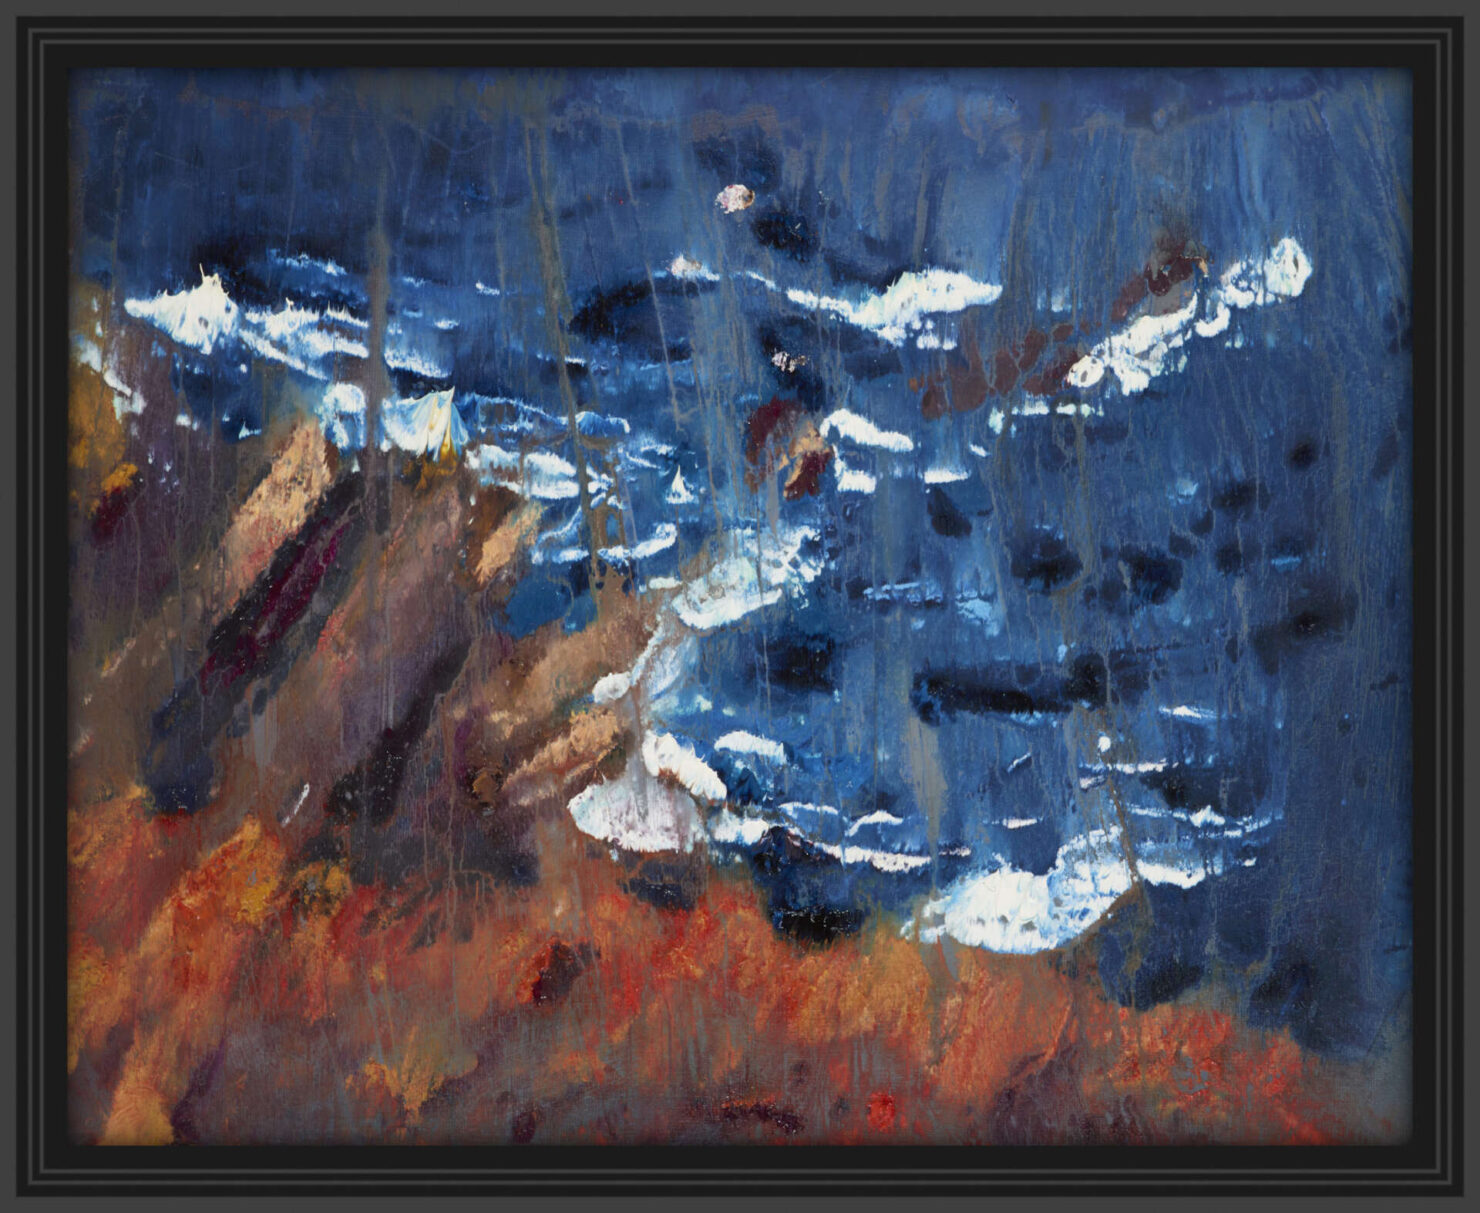 artist rod coyne's seacape "cill rialaig dream" is shown here, in a black frame.